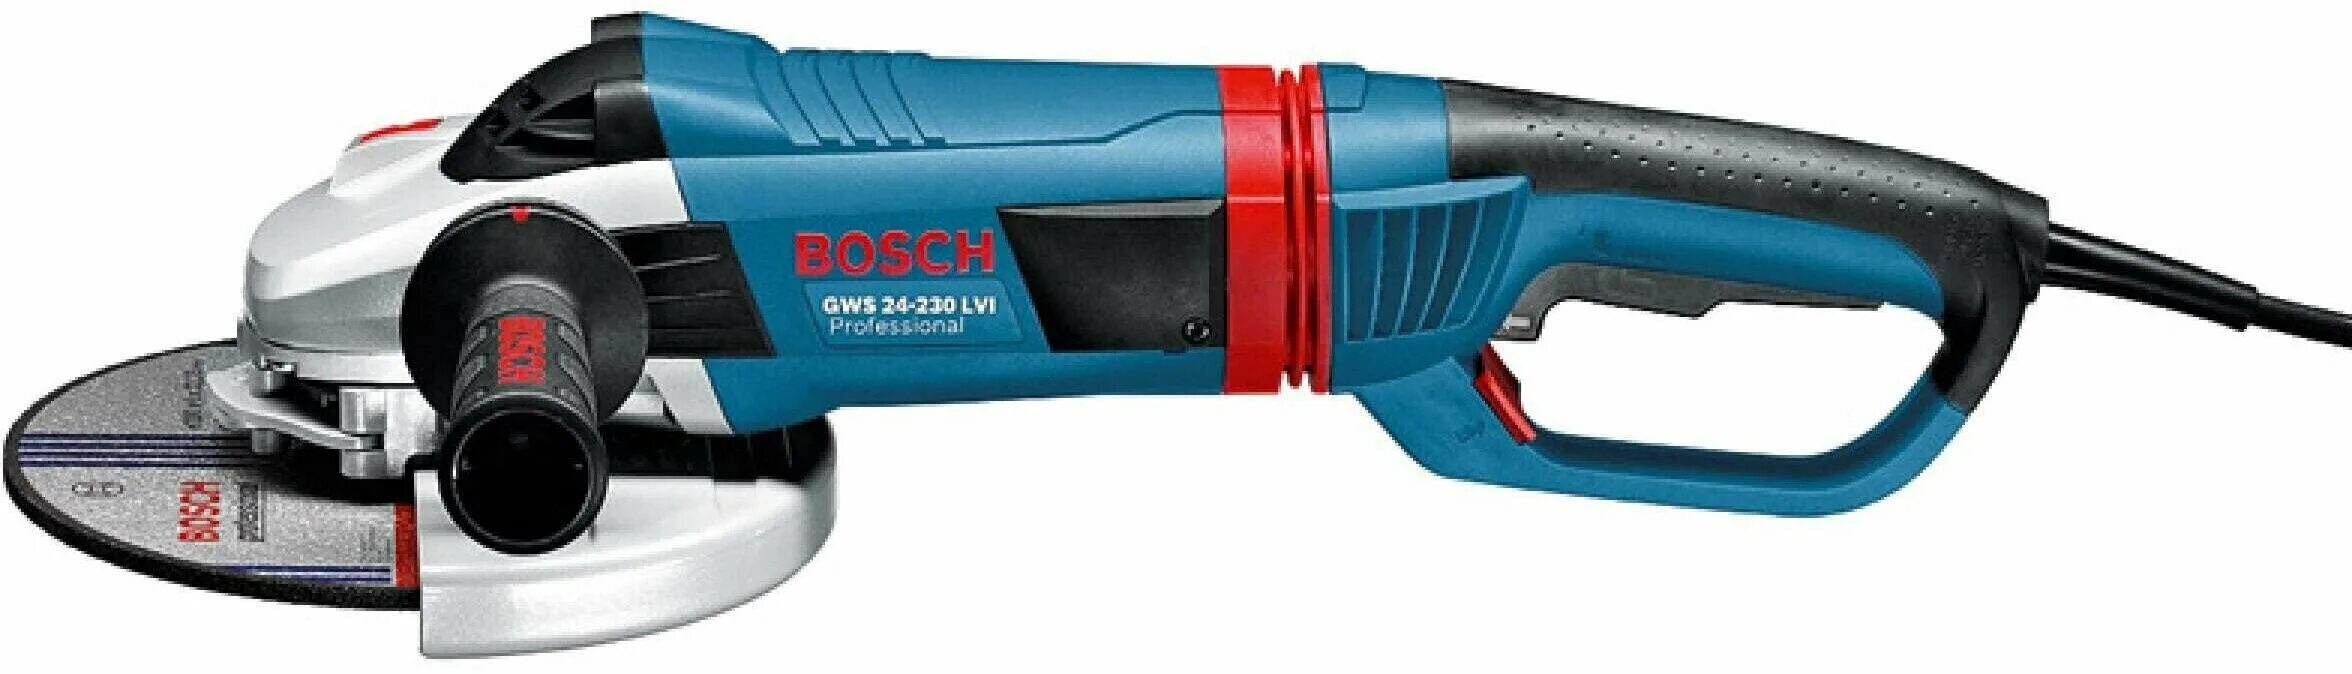 Купить bosch 230. УШМ 24-230 бош. Болгарка бош 230. Bosch УШМ (болгарка) GWS 24-230 LVI (0601893f00). УШМ Bosch GWS 24-230 LVI.